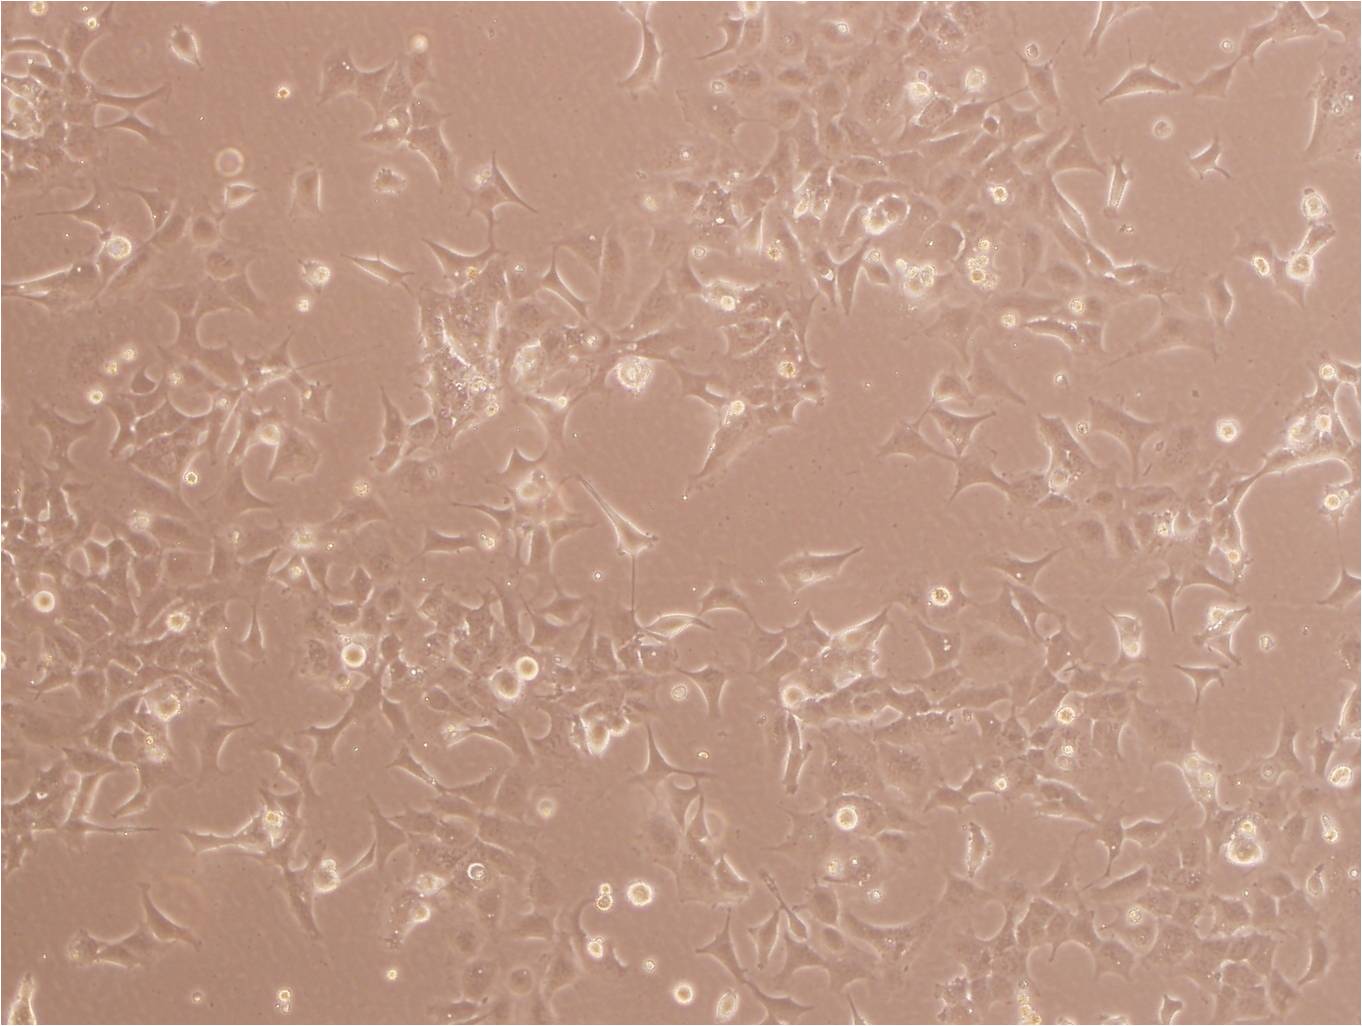 SK-N-MC Cell:人神经上皮瘤细胞系,SK-N-MC Cell